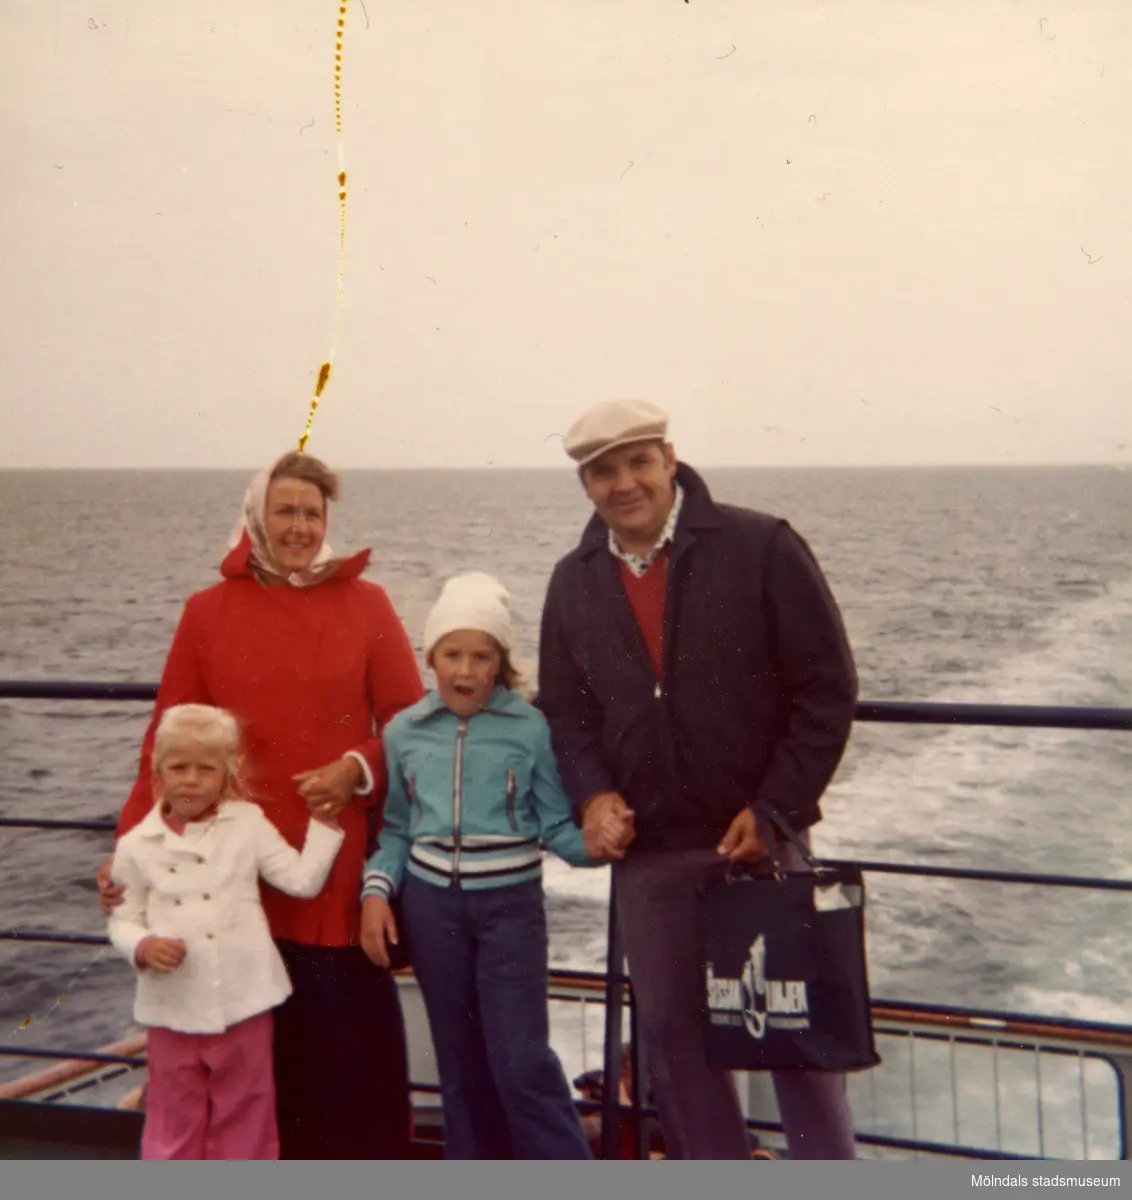 Berit, Christine, Ingela och Per-Olof på semesterresa till Saeby i Danmark, cirka 1975.
Familjen påväg till Fredikshamn med Sessanlinjen.